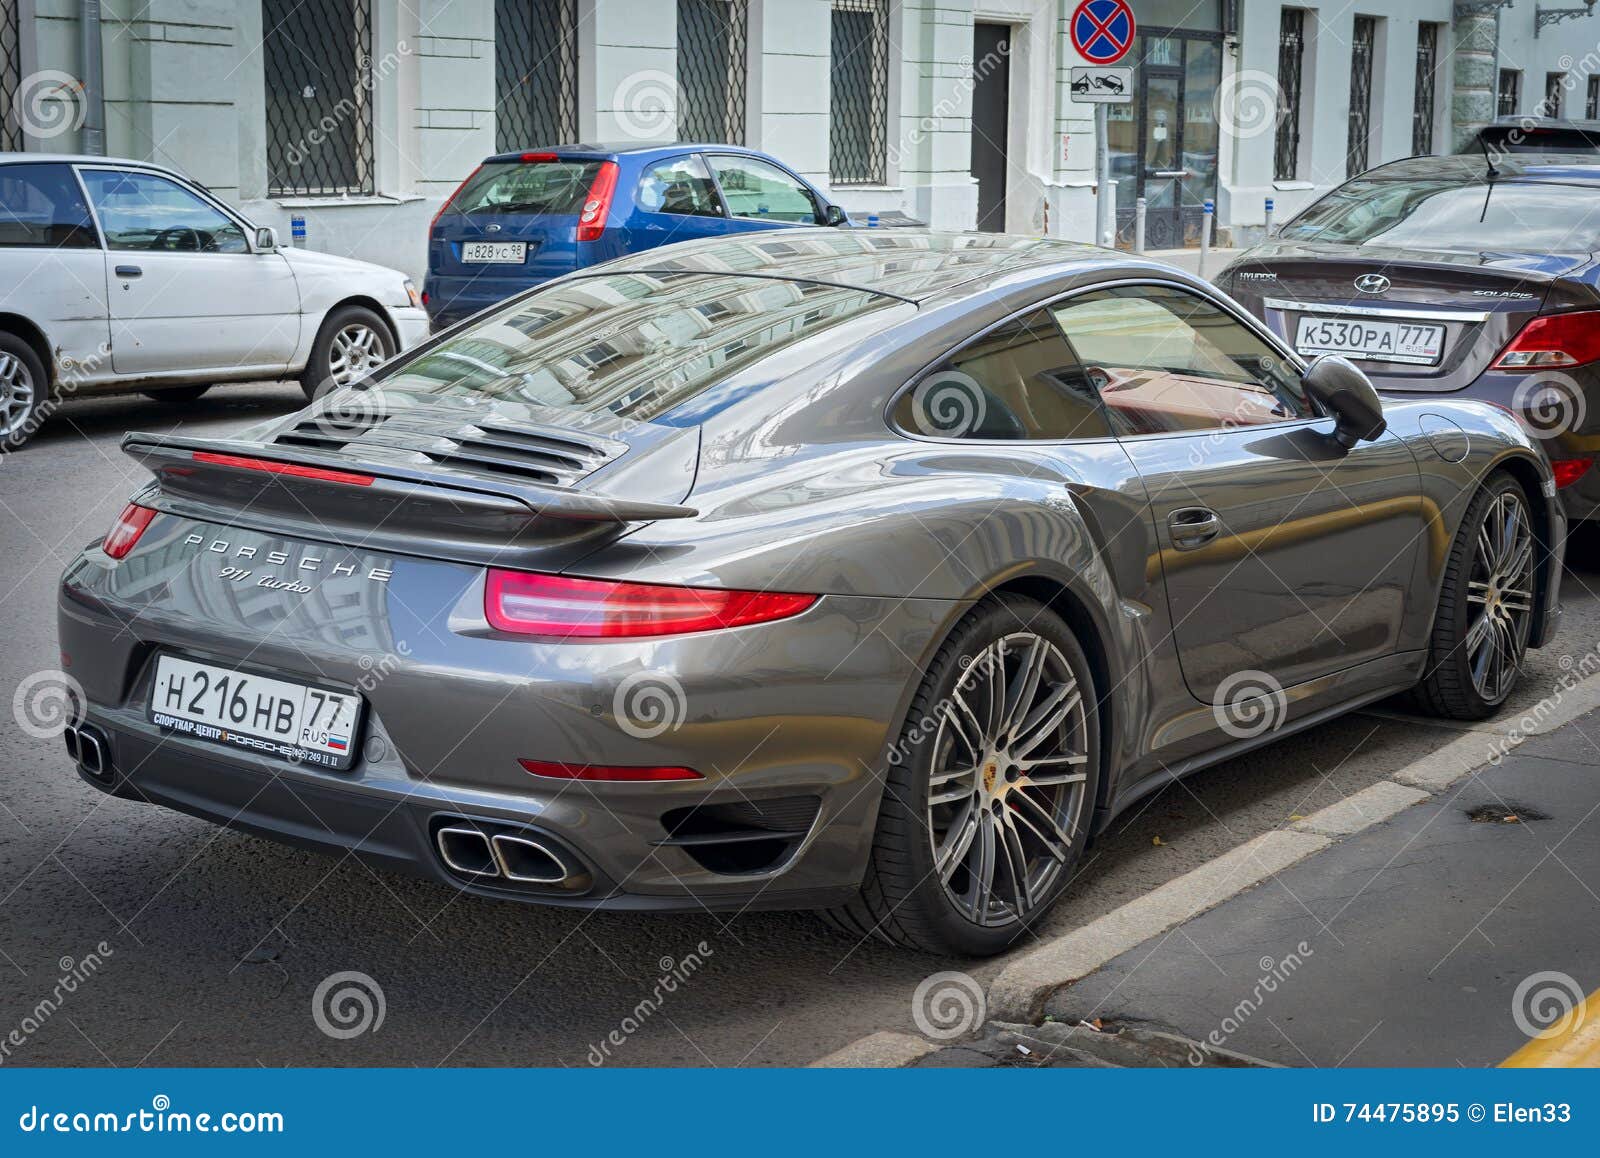 911 porsche. Moskva Ryssland - Juli 10, 2016: Porsche 911 turboladdare som parkeras på gatan, sikt för tillbaka sida